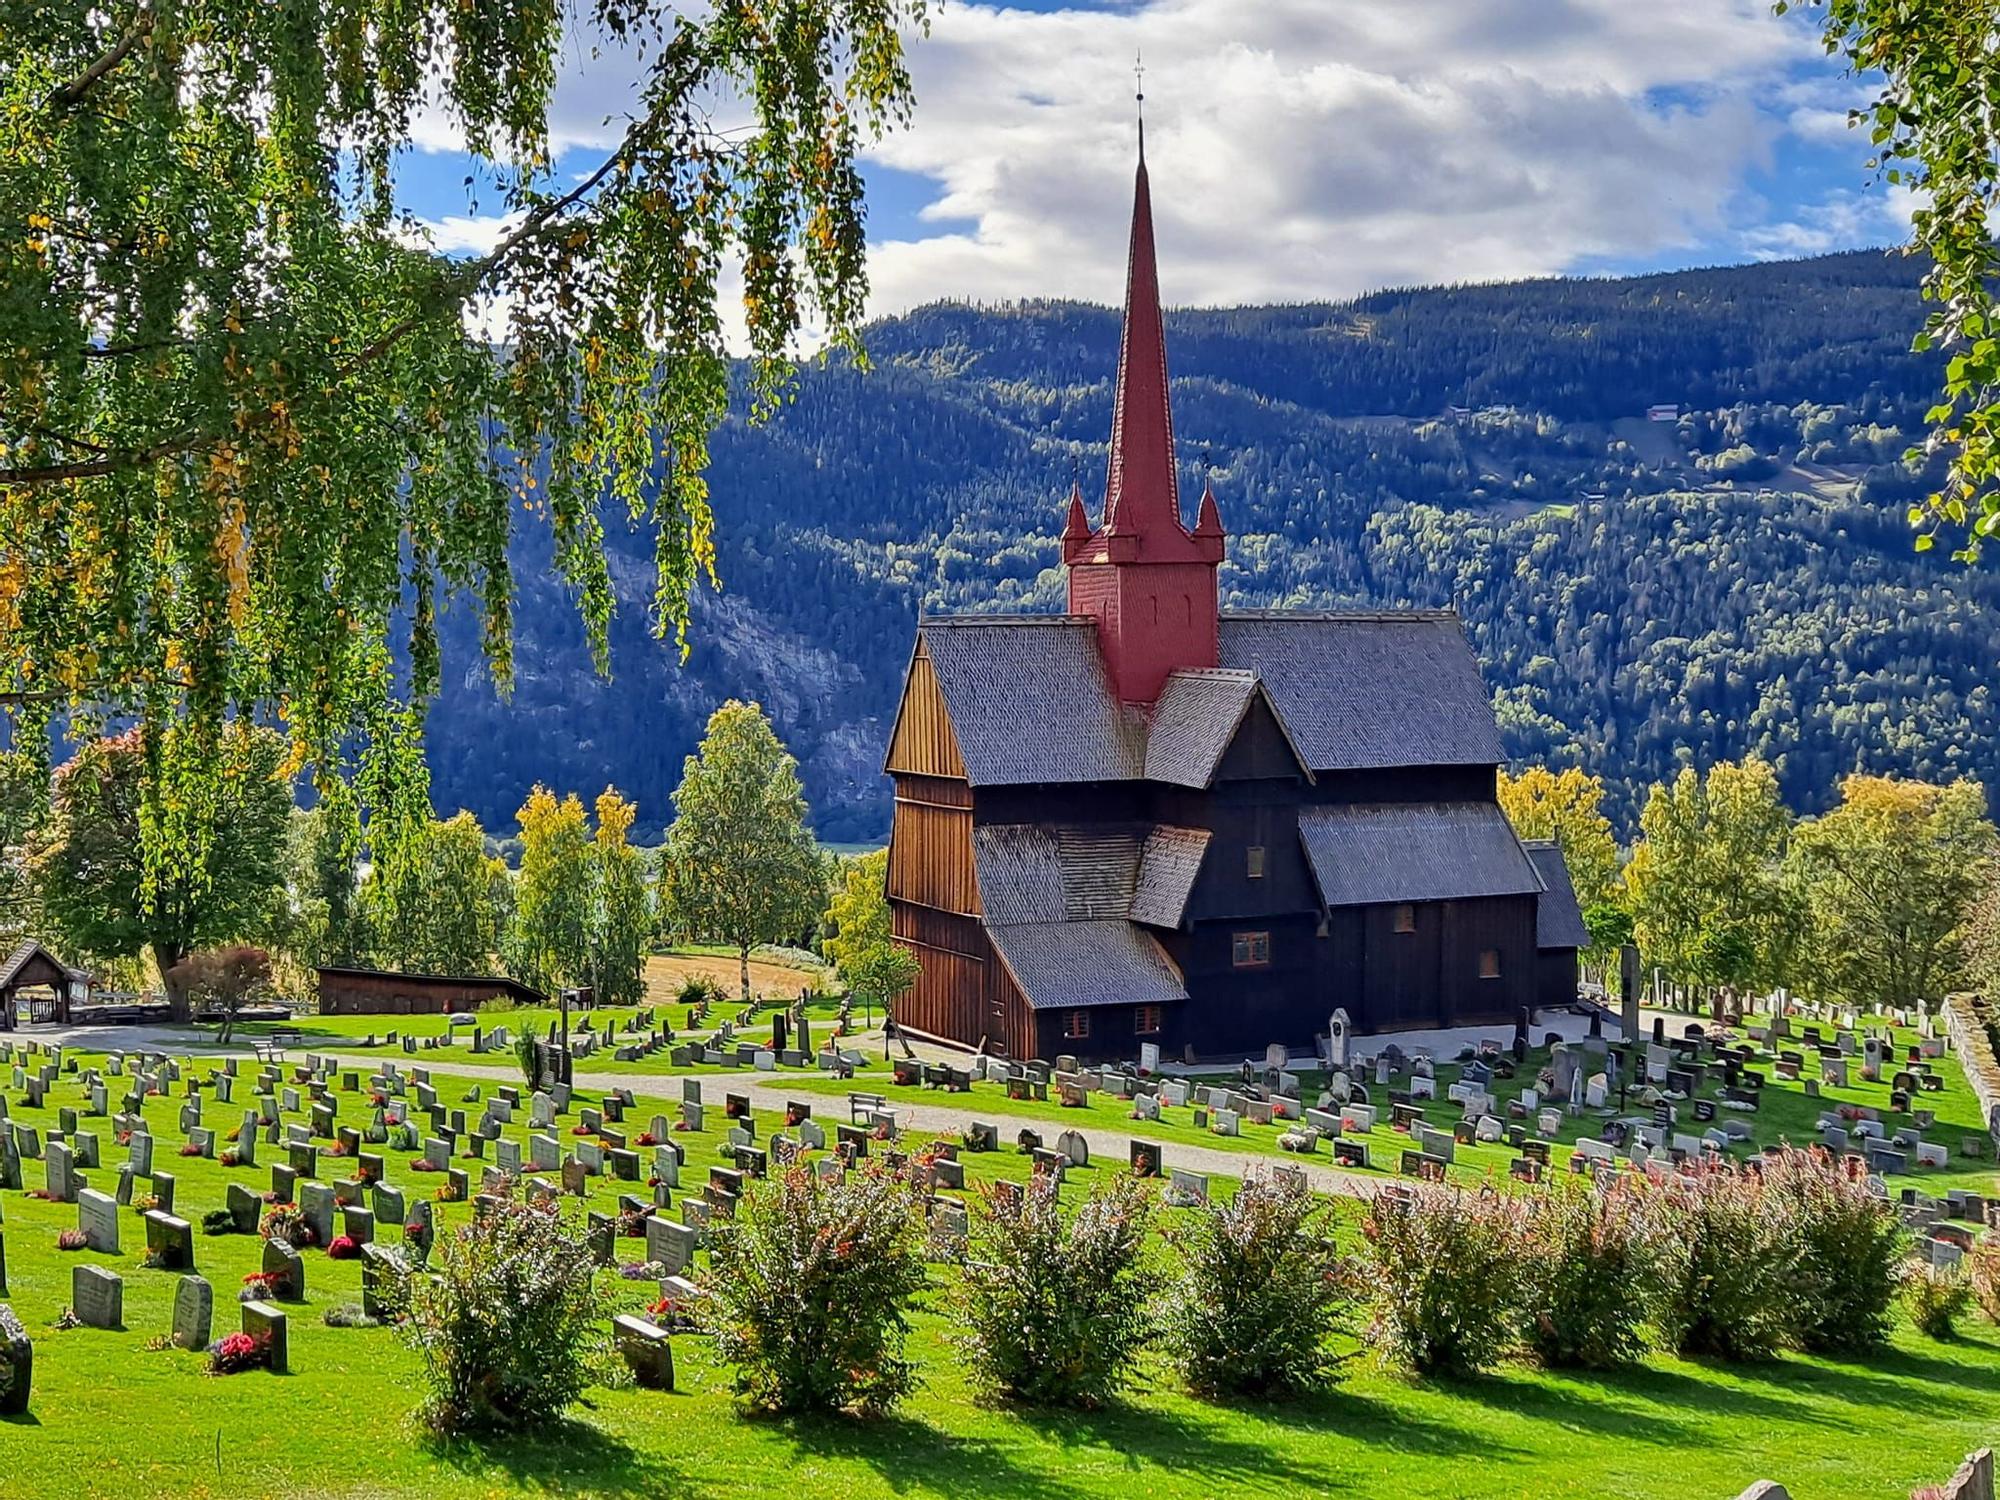 Una de las llamativas imágenes captadas por &quot;Pichi&quot; durante su ruta por Noruega.